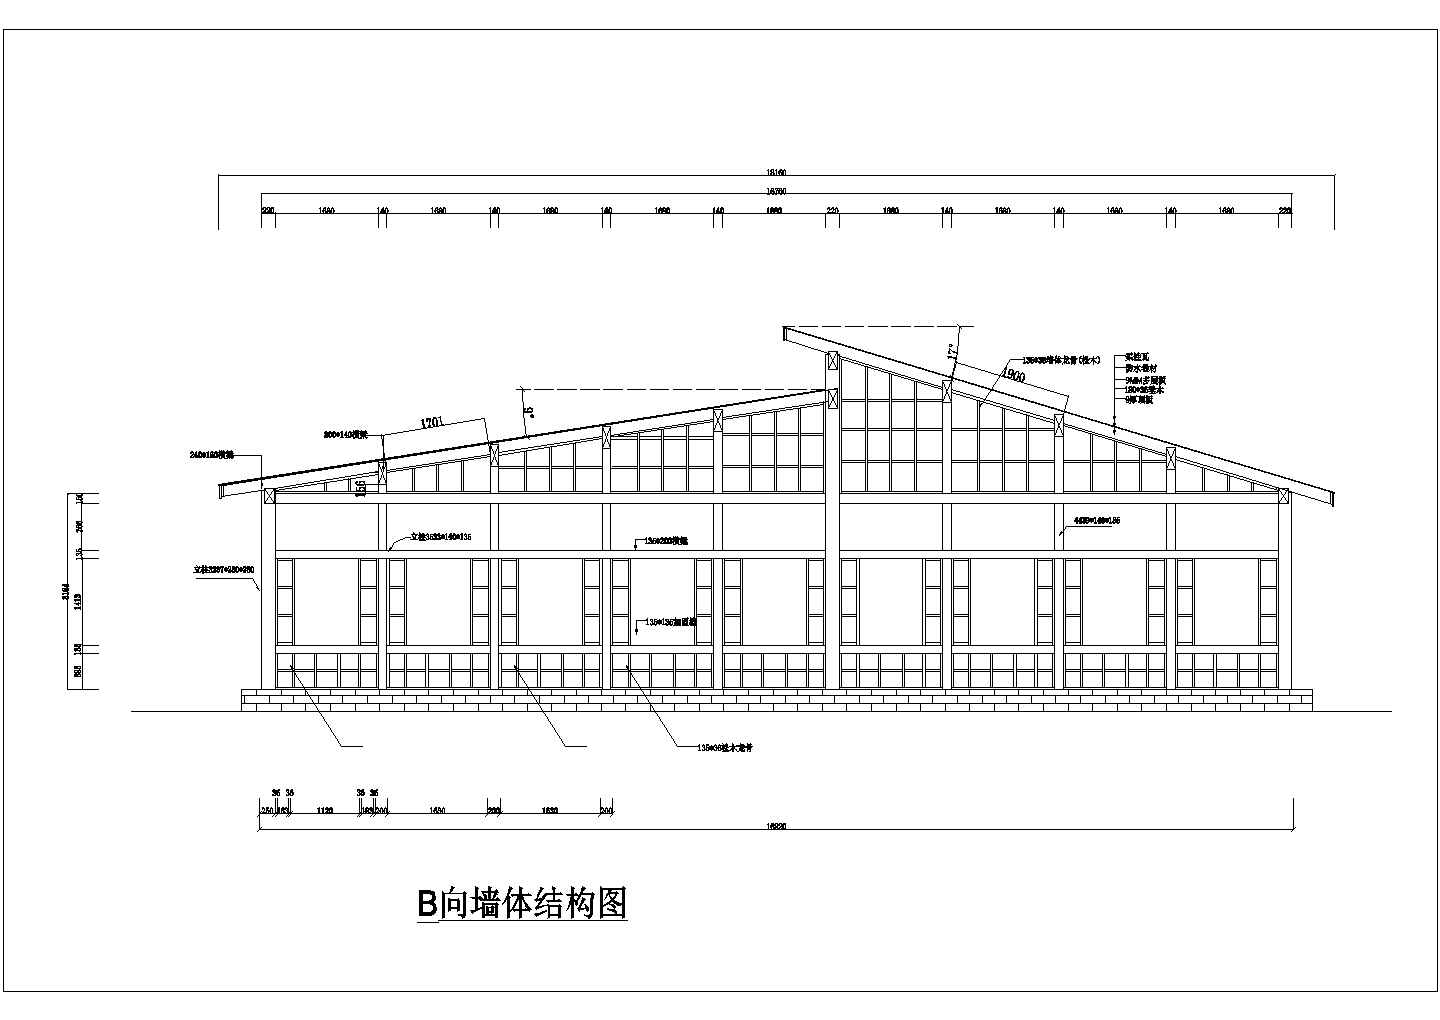 北京某幼儿园290平米单纯木结构活动室建筑设计CAD图纸